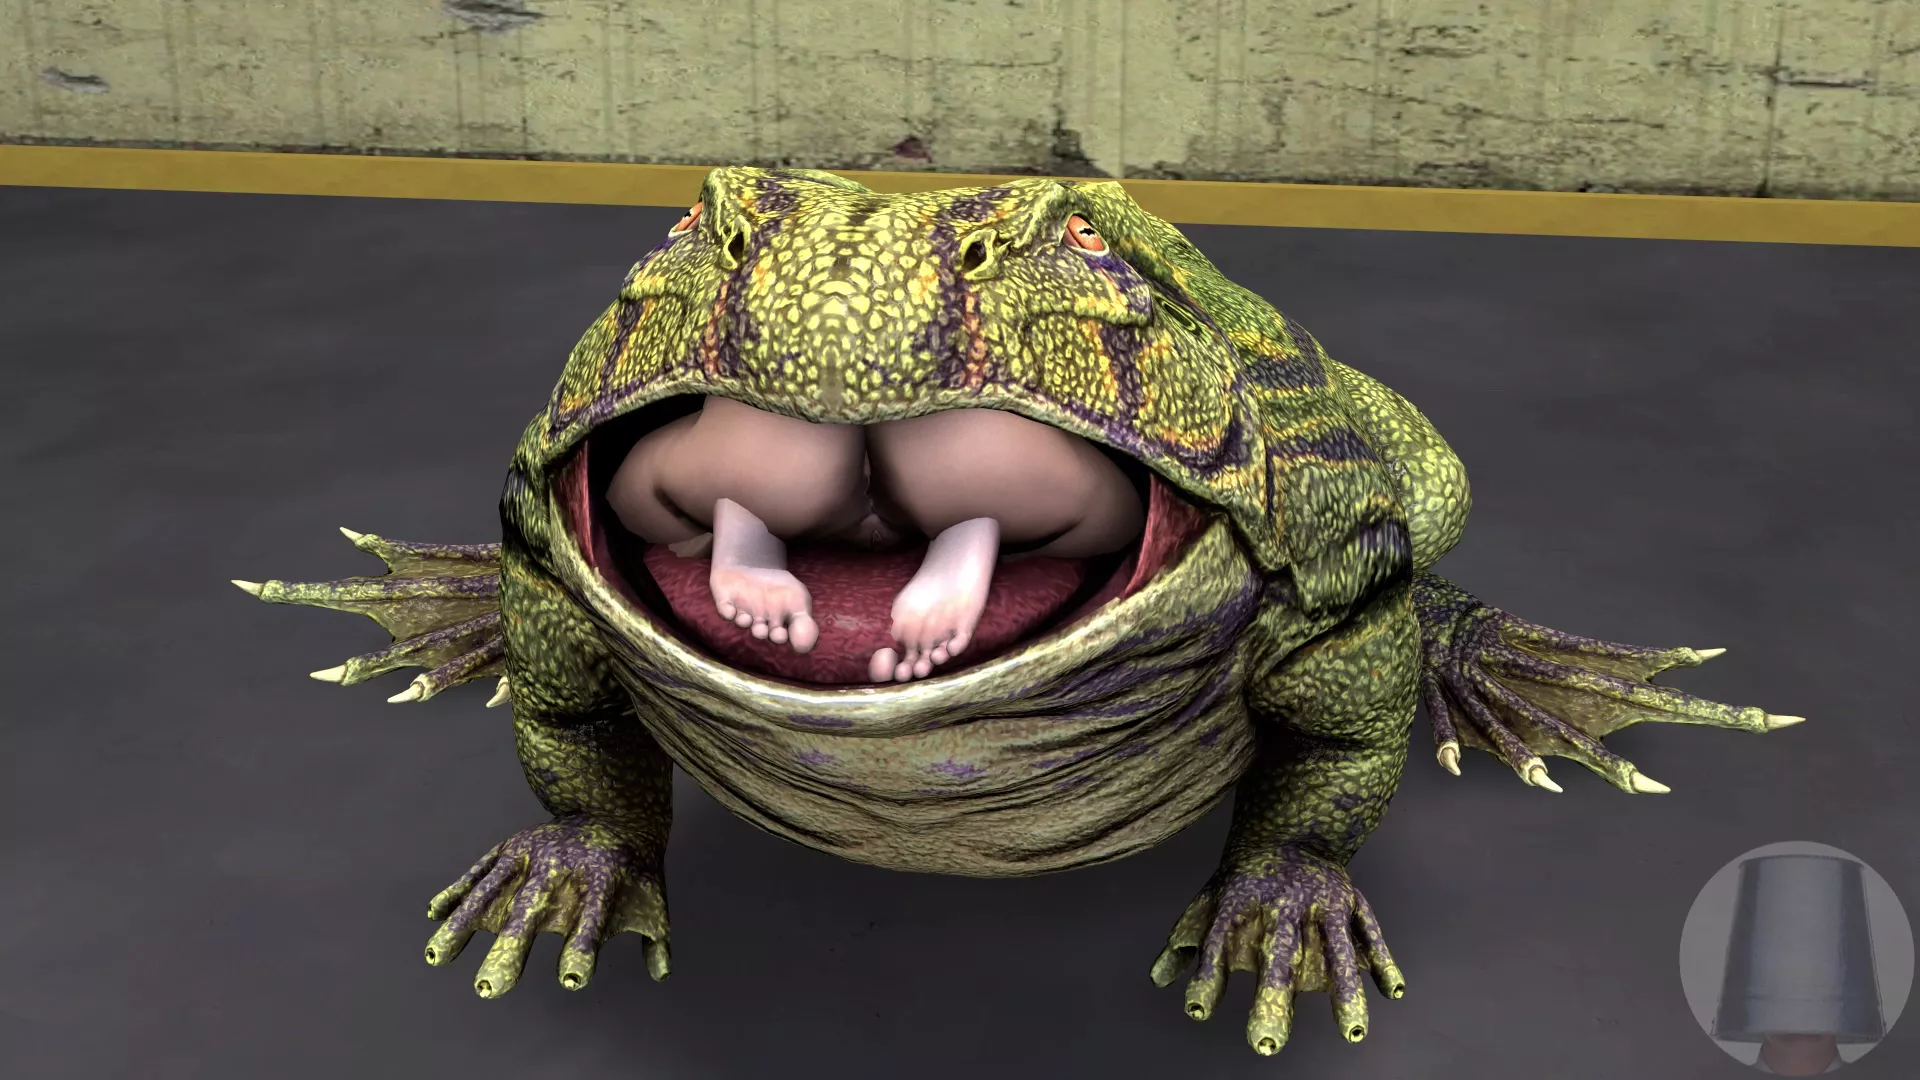 Porn frog